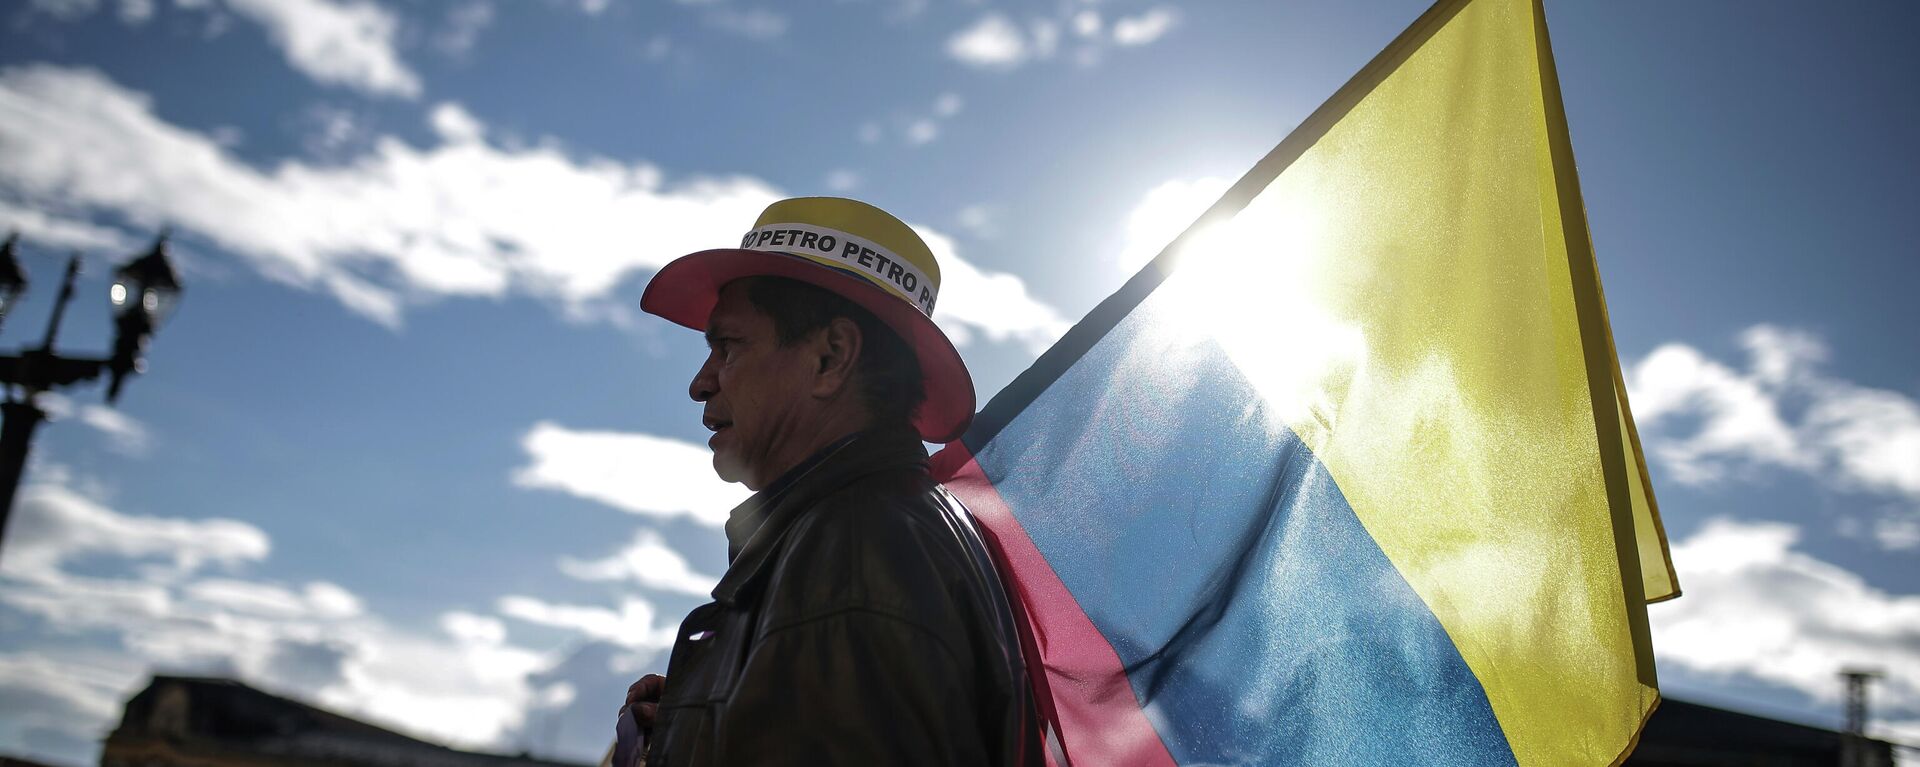 Partidario de Gustavo Petro sostiene la bandera de Colombia - Sputnik Mundo, 1920, 25.01.2022